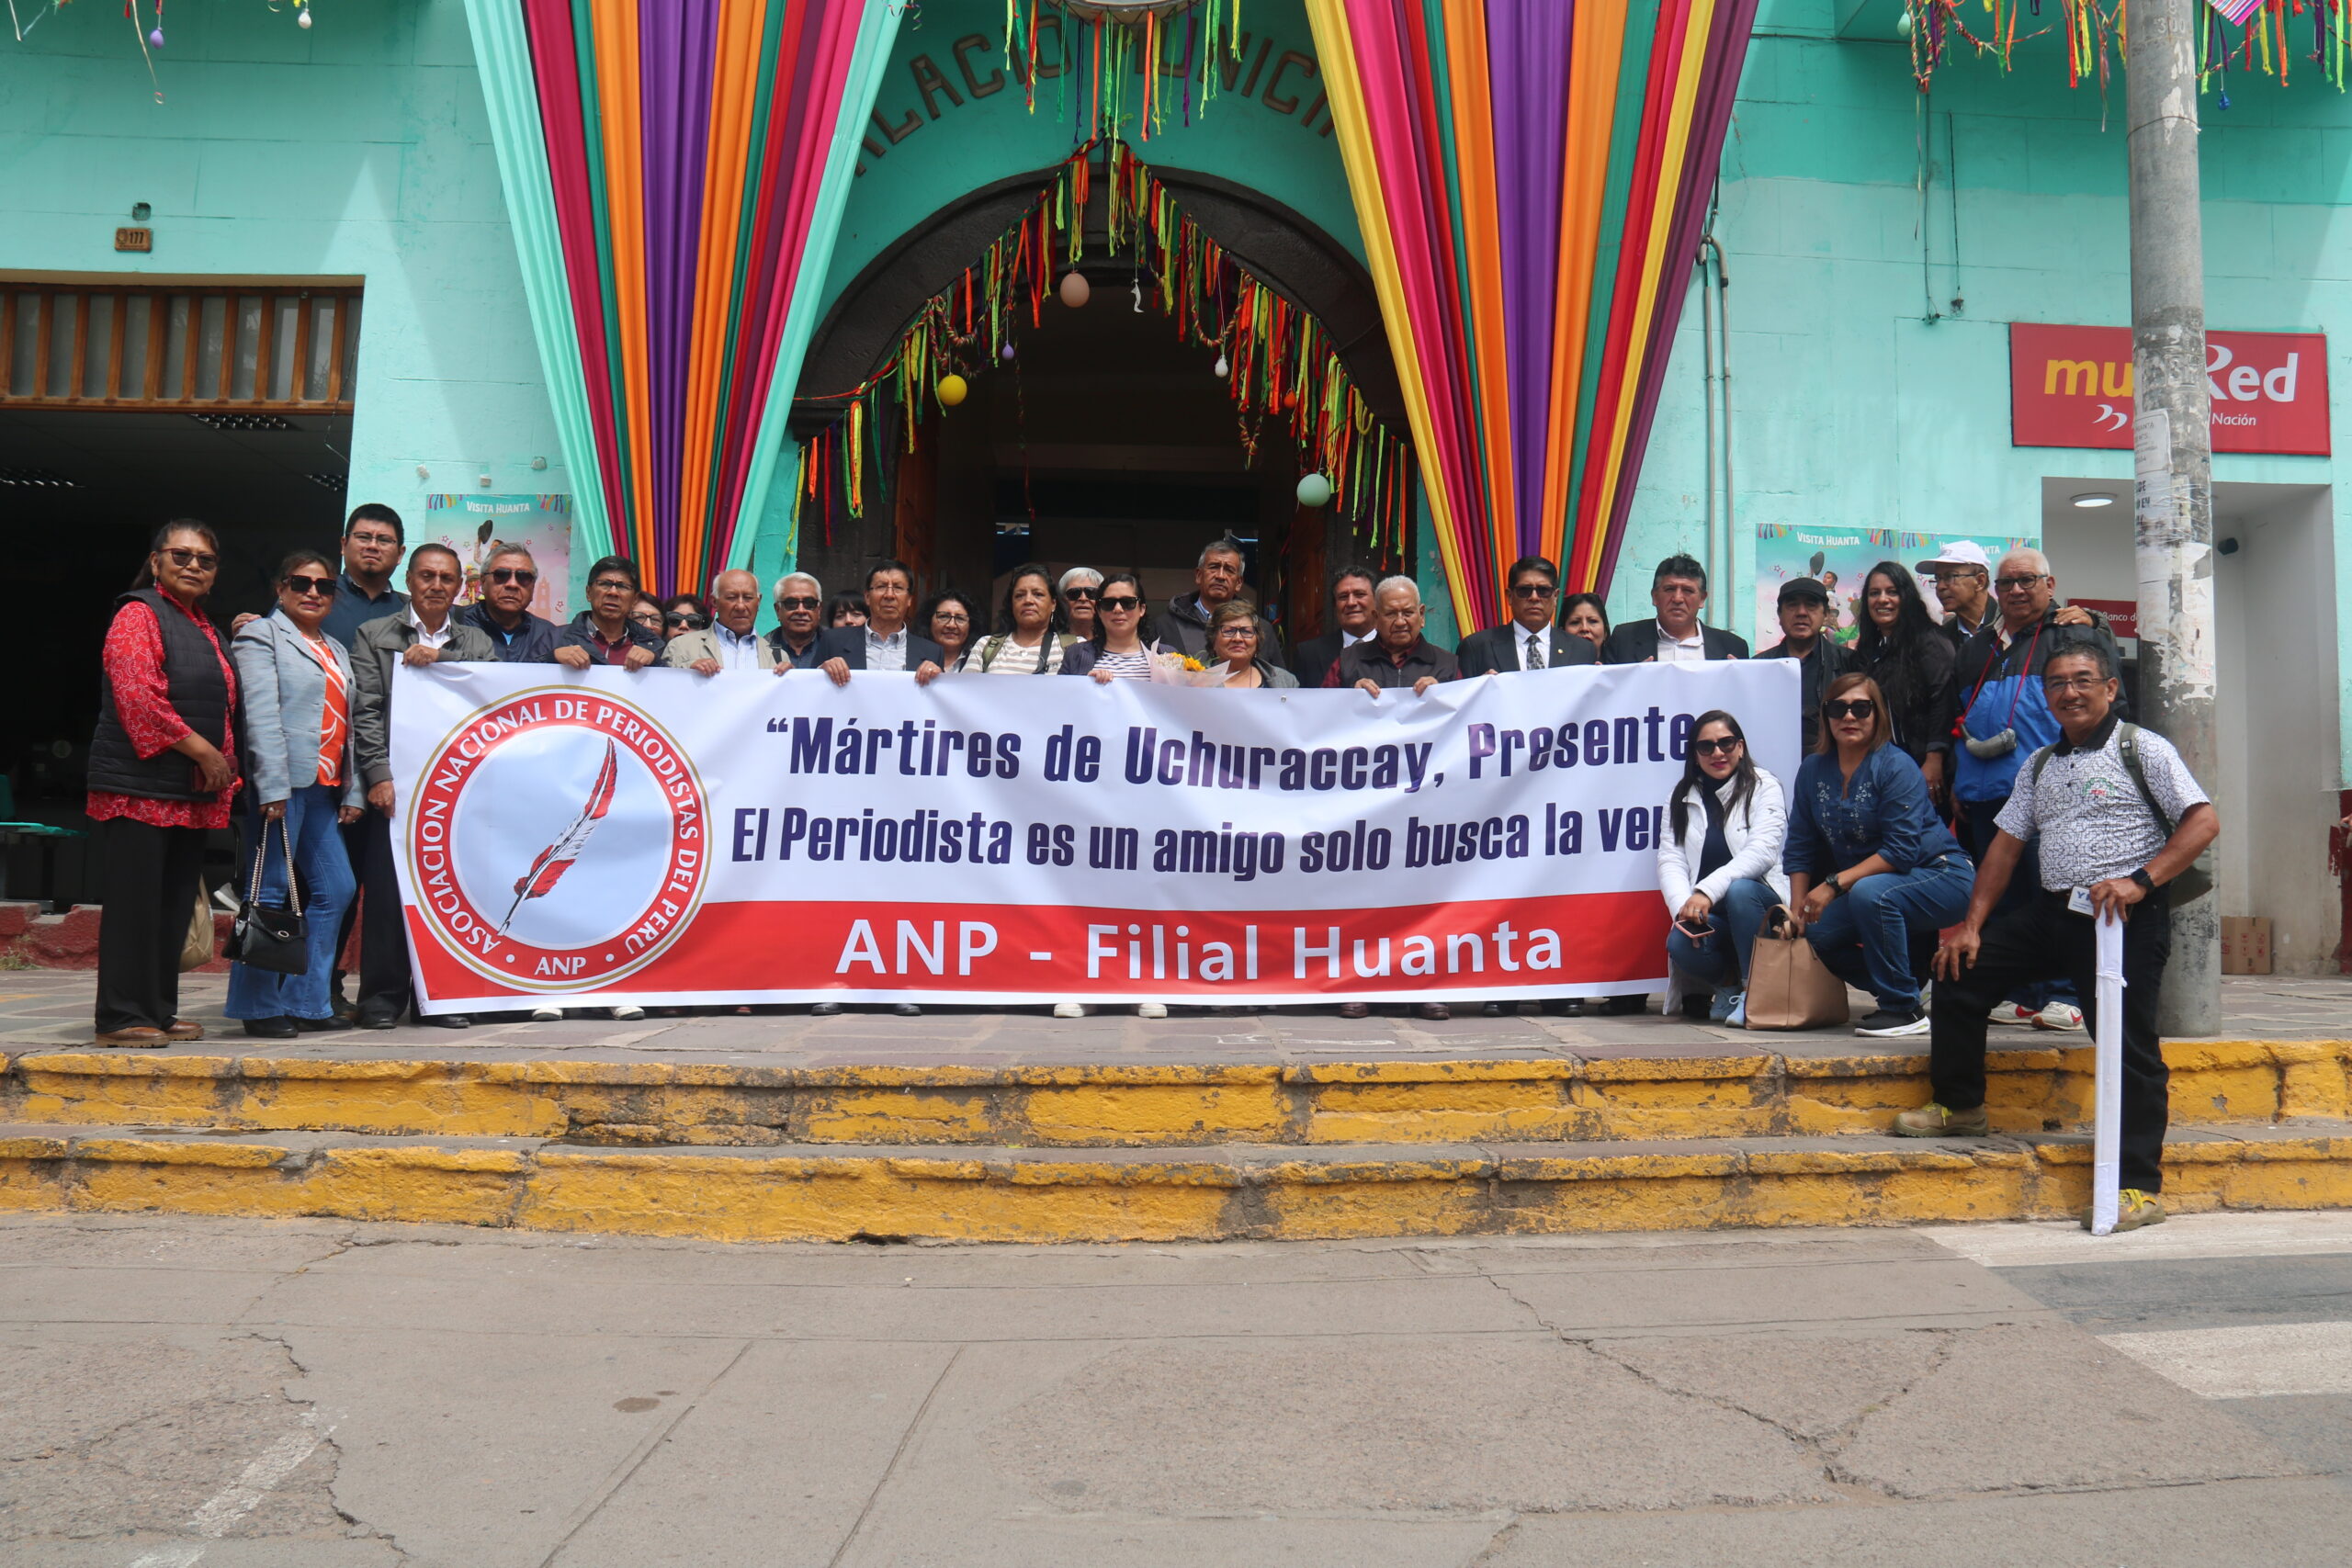 41 años Uchuraccay: Inician actividades conmemorativas con la ANP Huanta